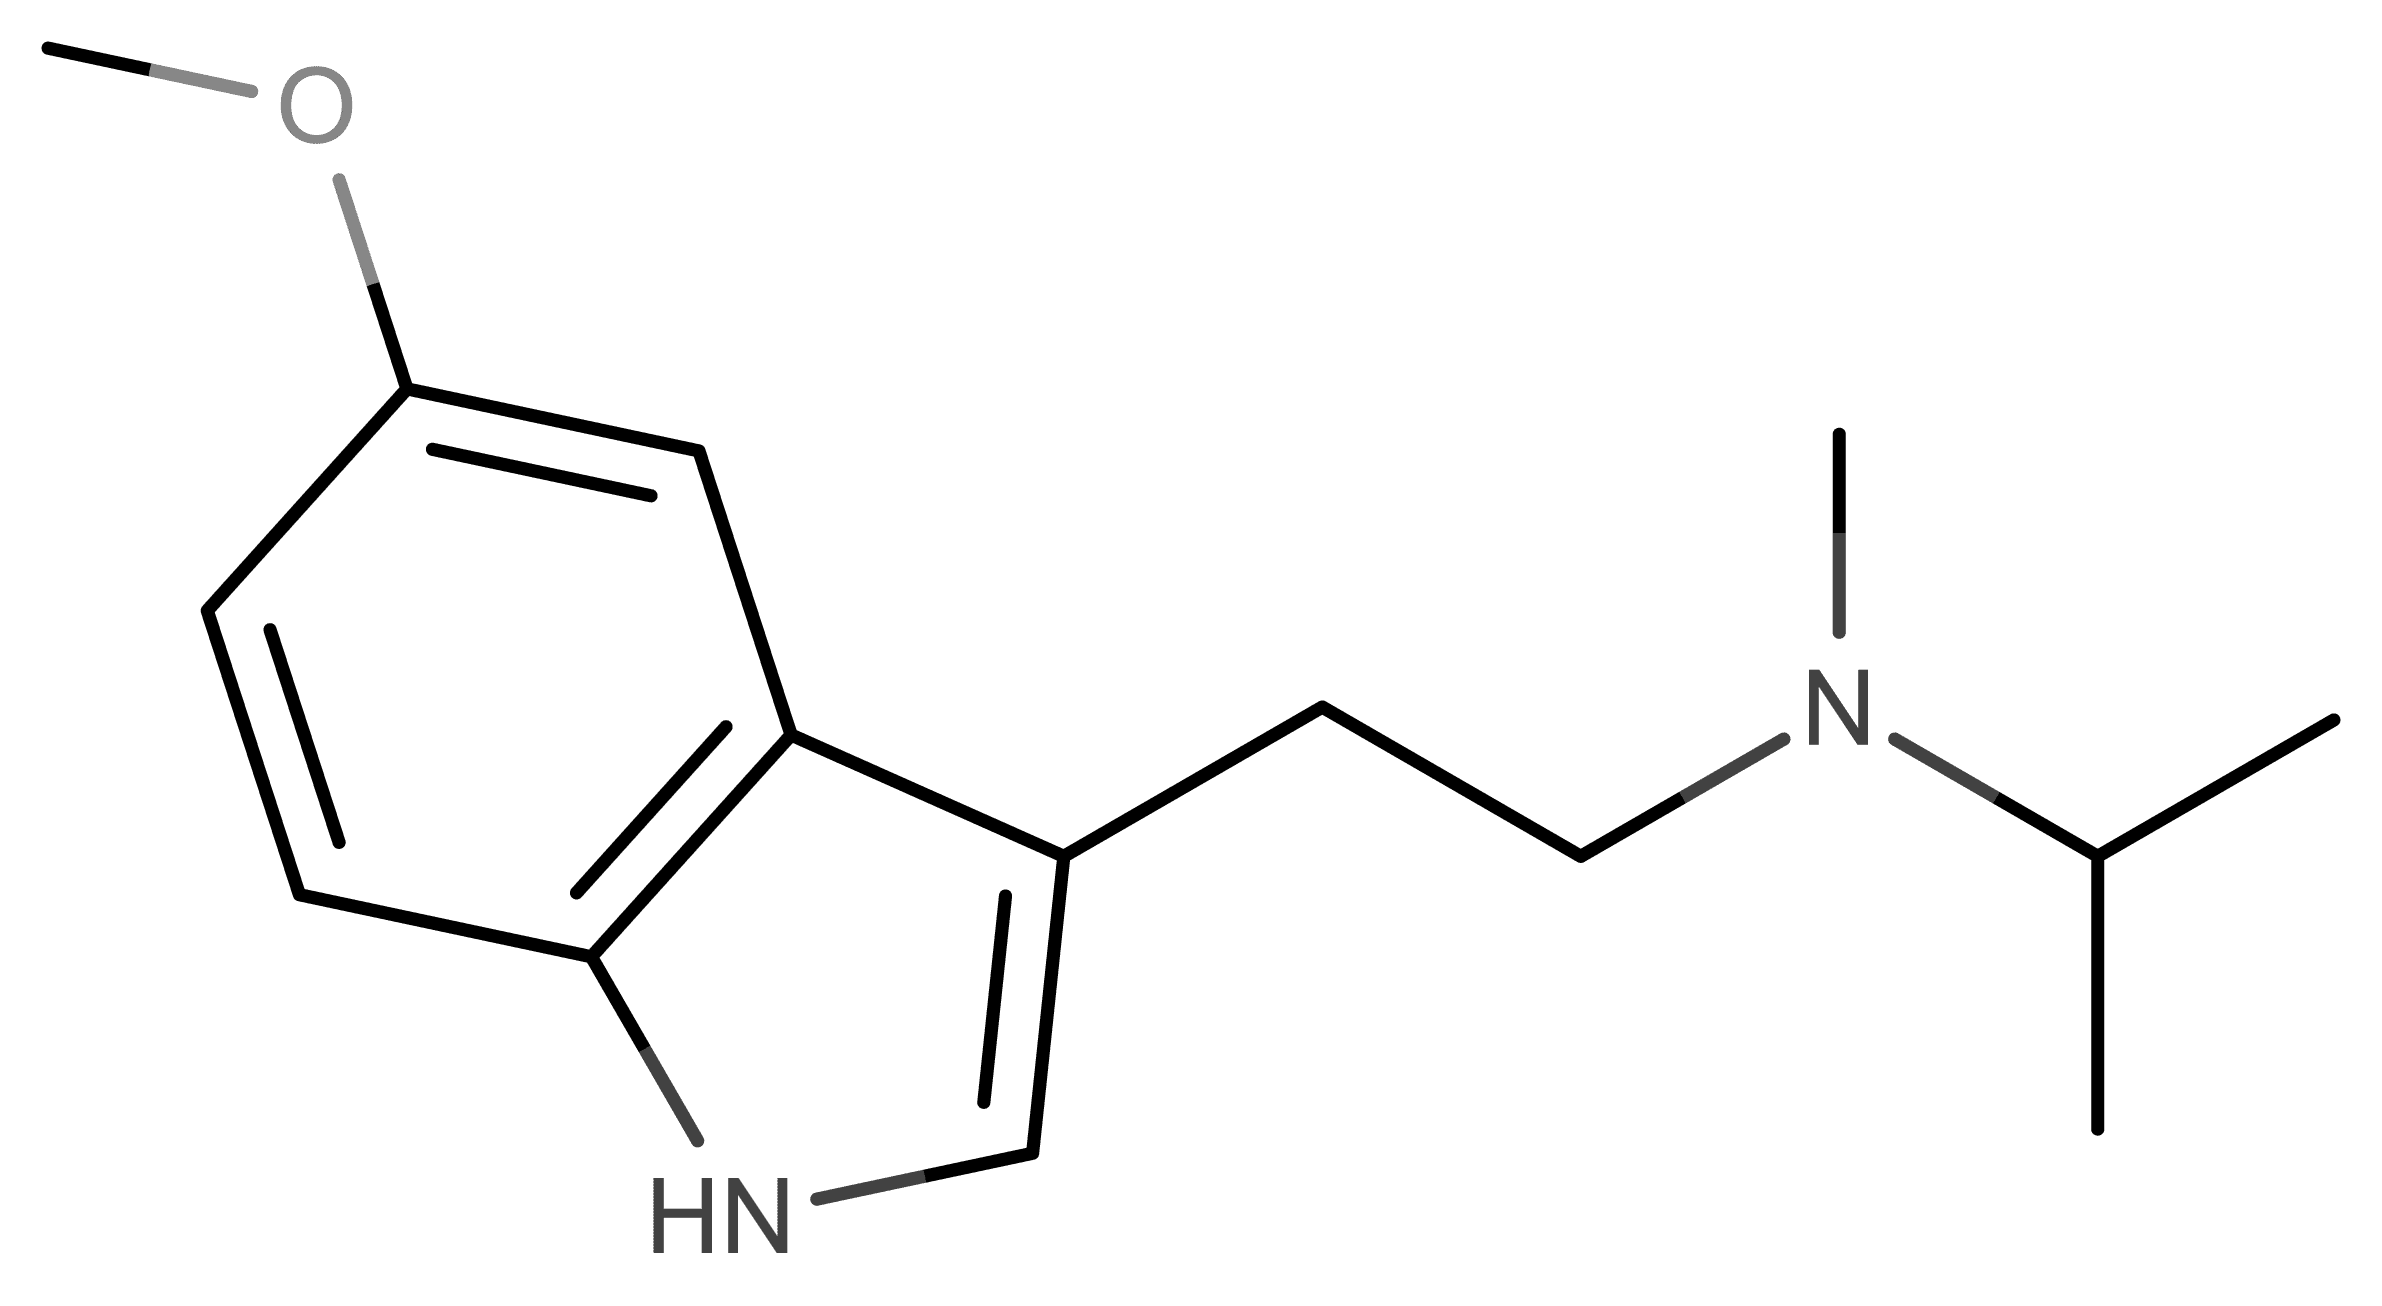 5-MeO-MiPT molecular scheme